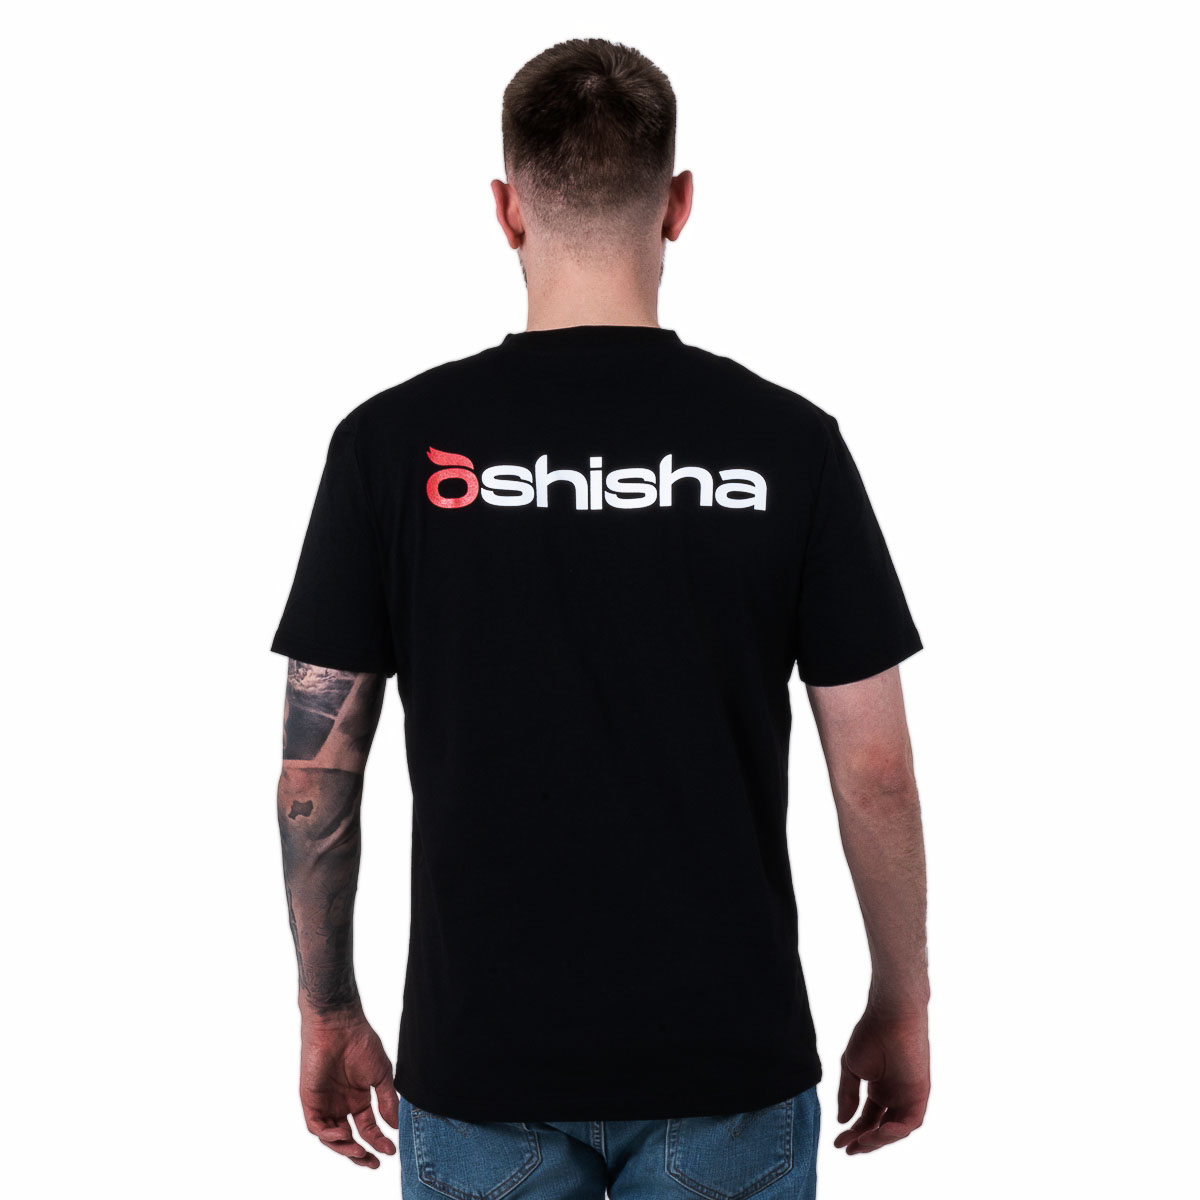 Фирменная футболка Oshisha M (чёрная)